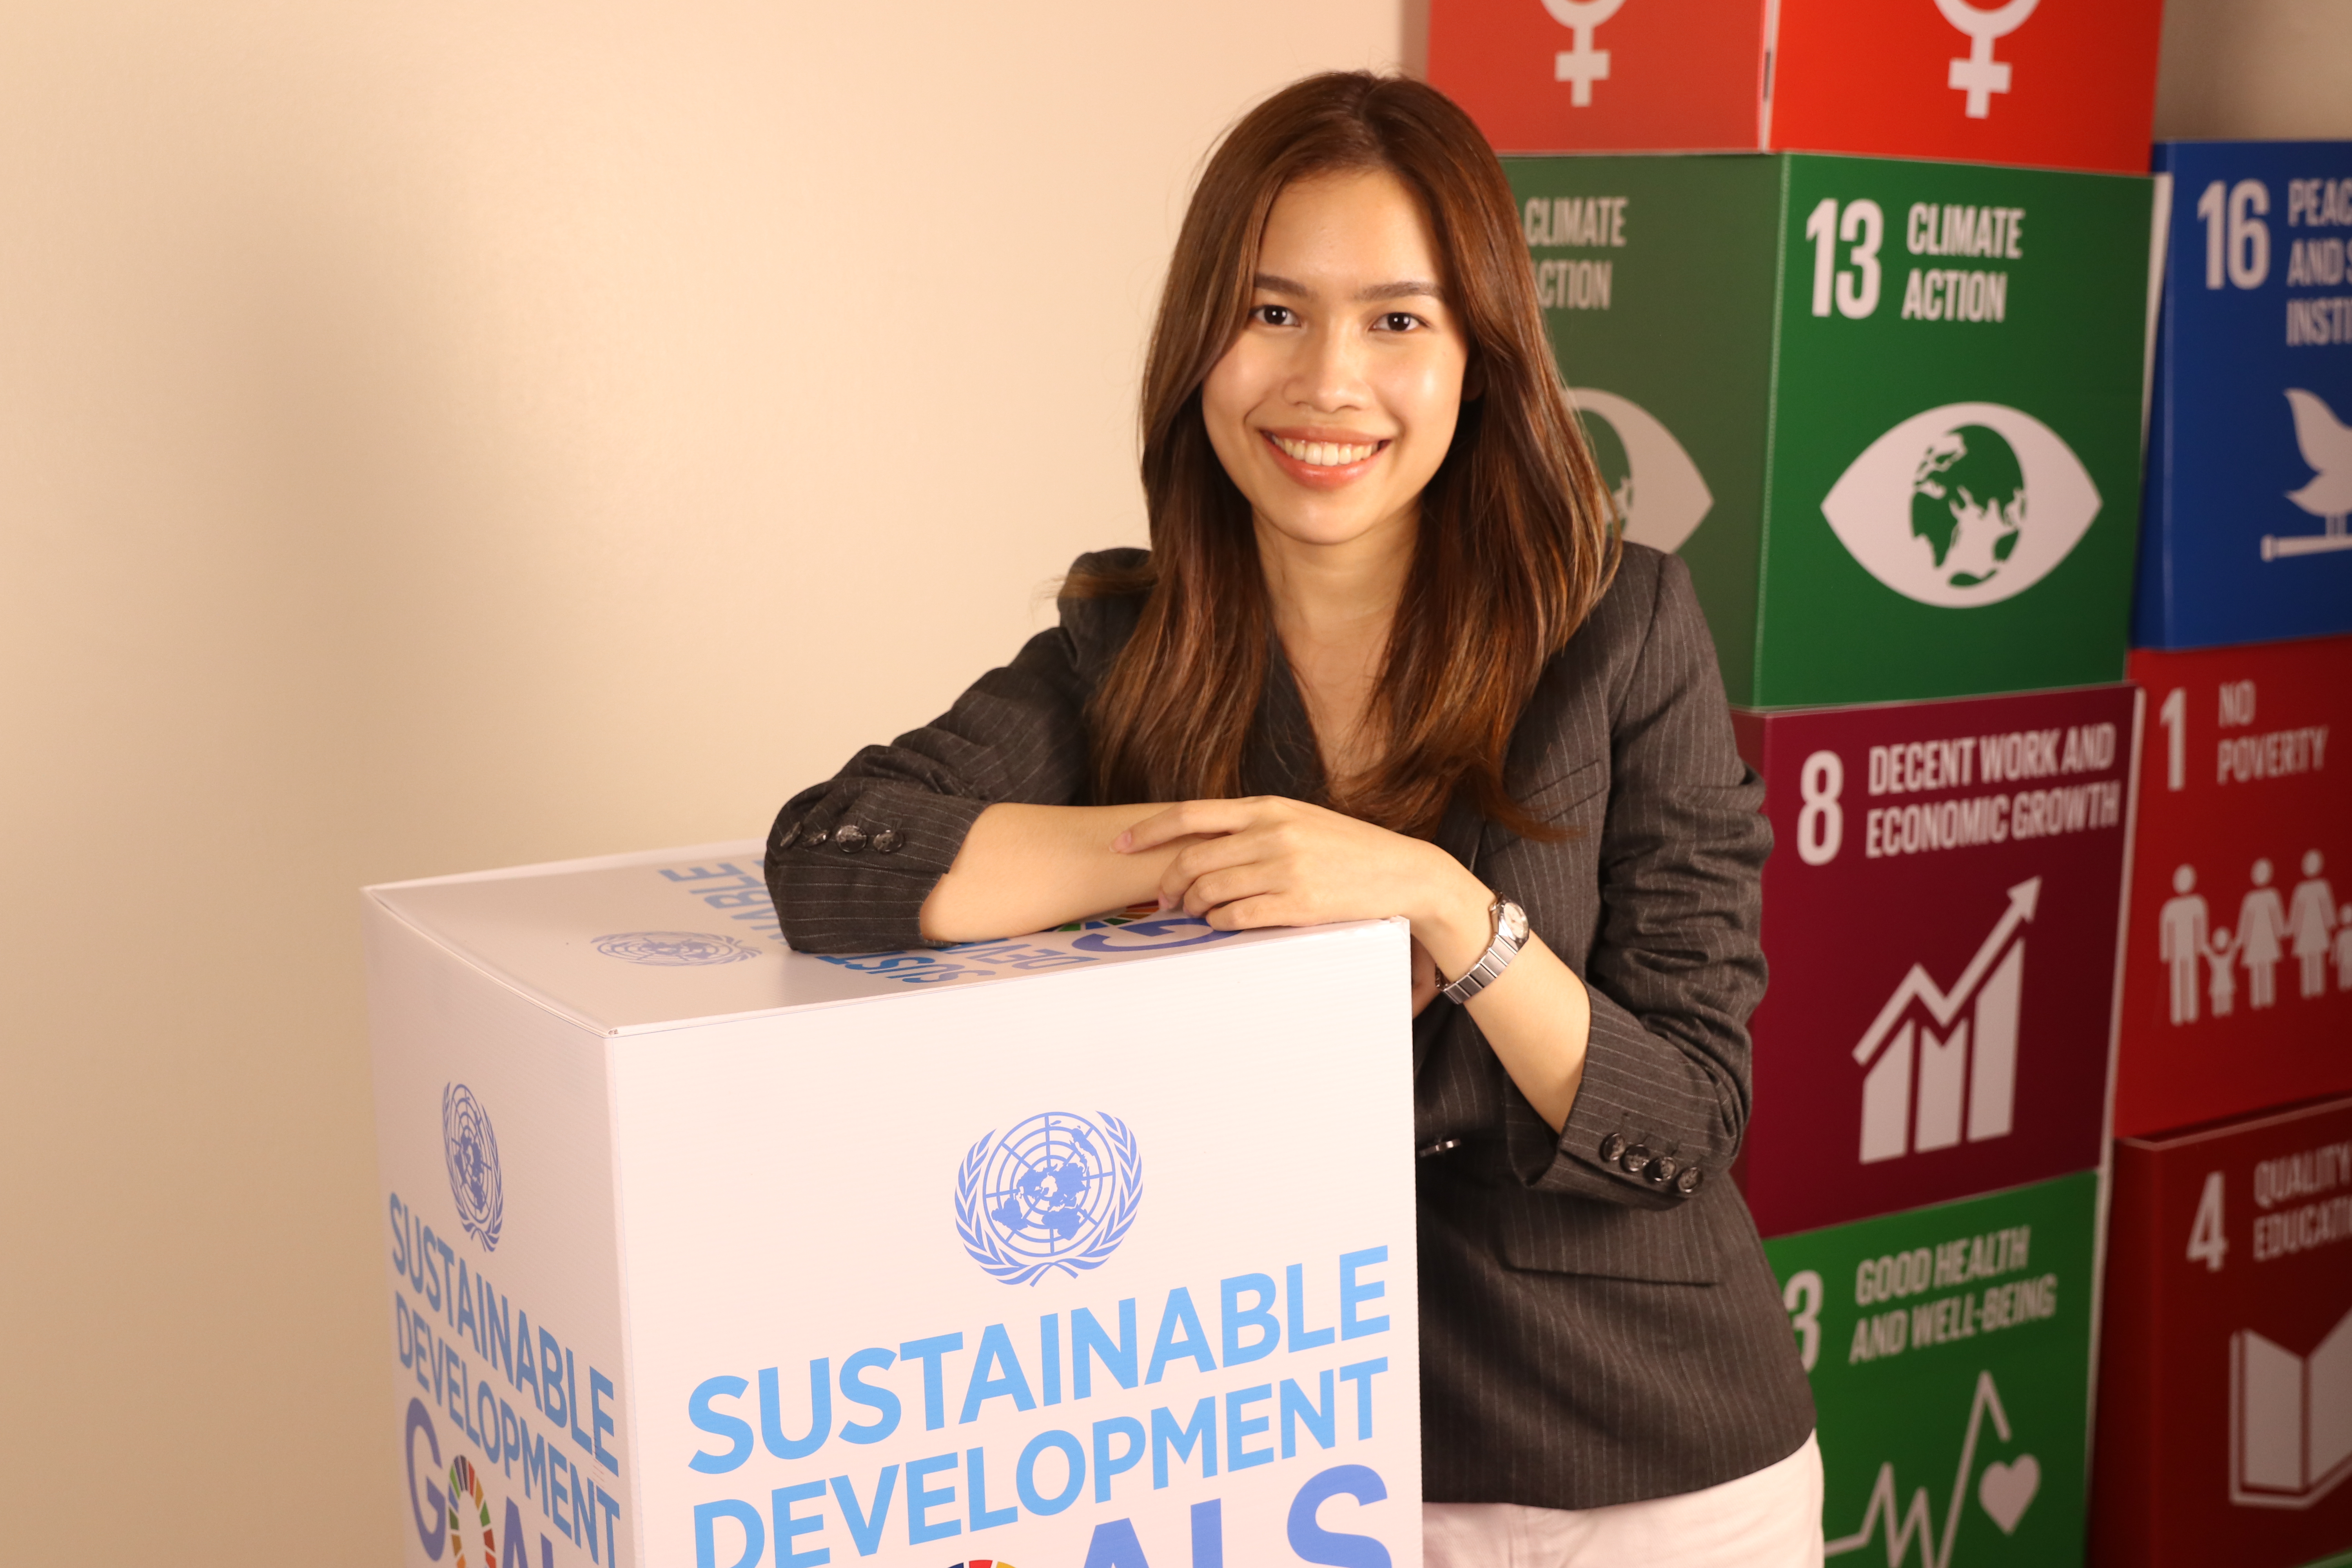 Taratan Intarachatorn poses with SDG boxes